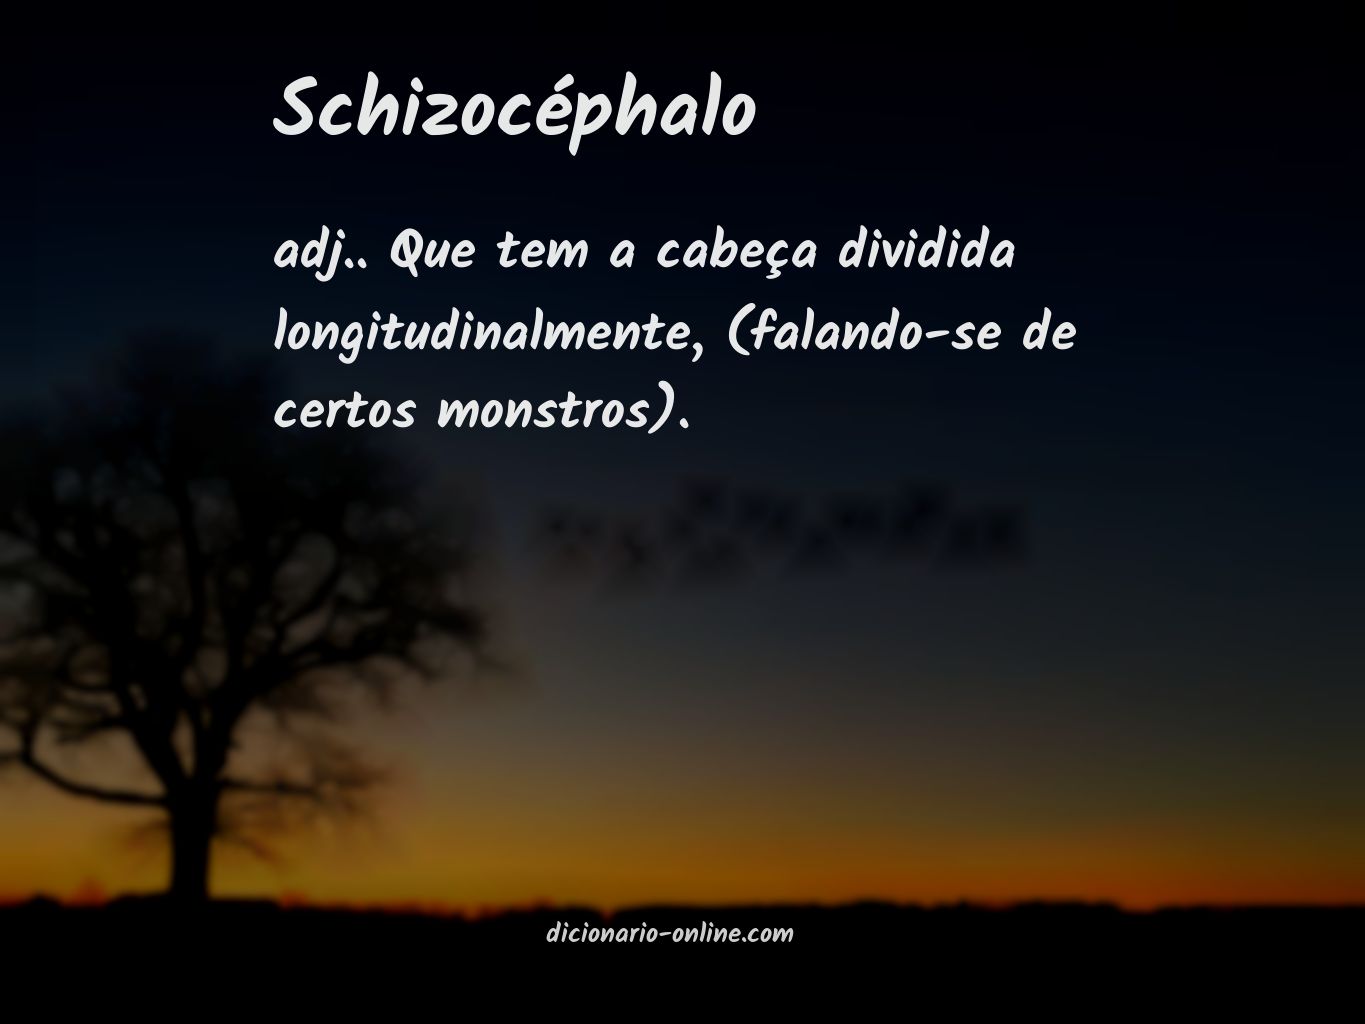 Significado de schizocéphalo